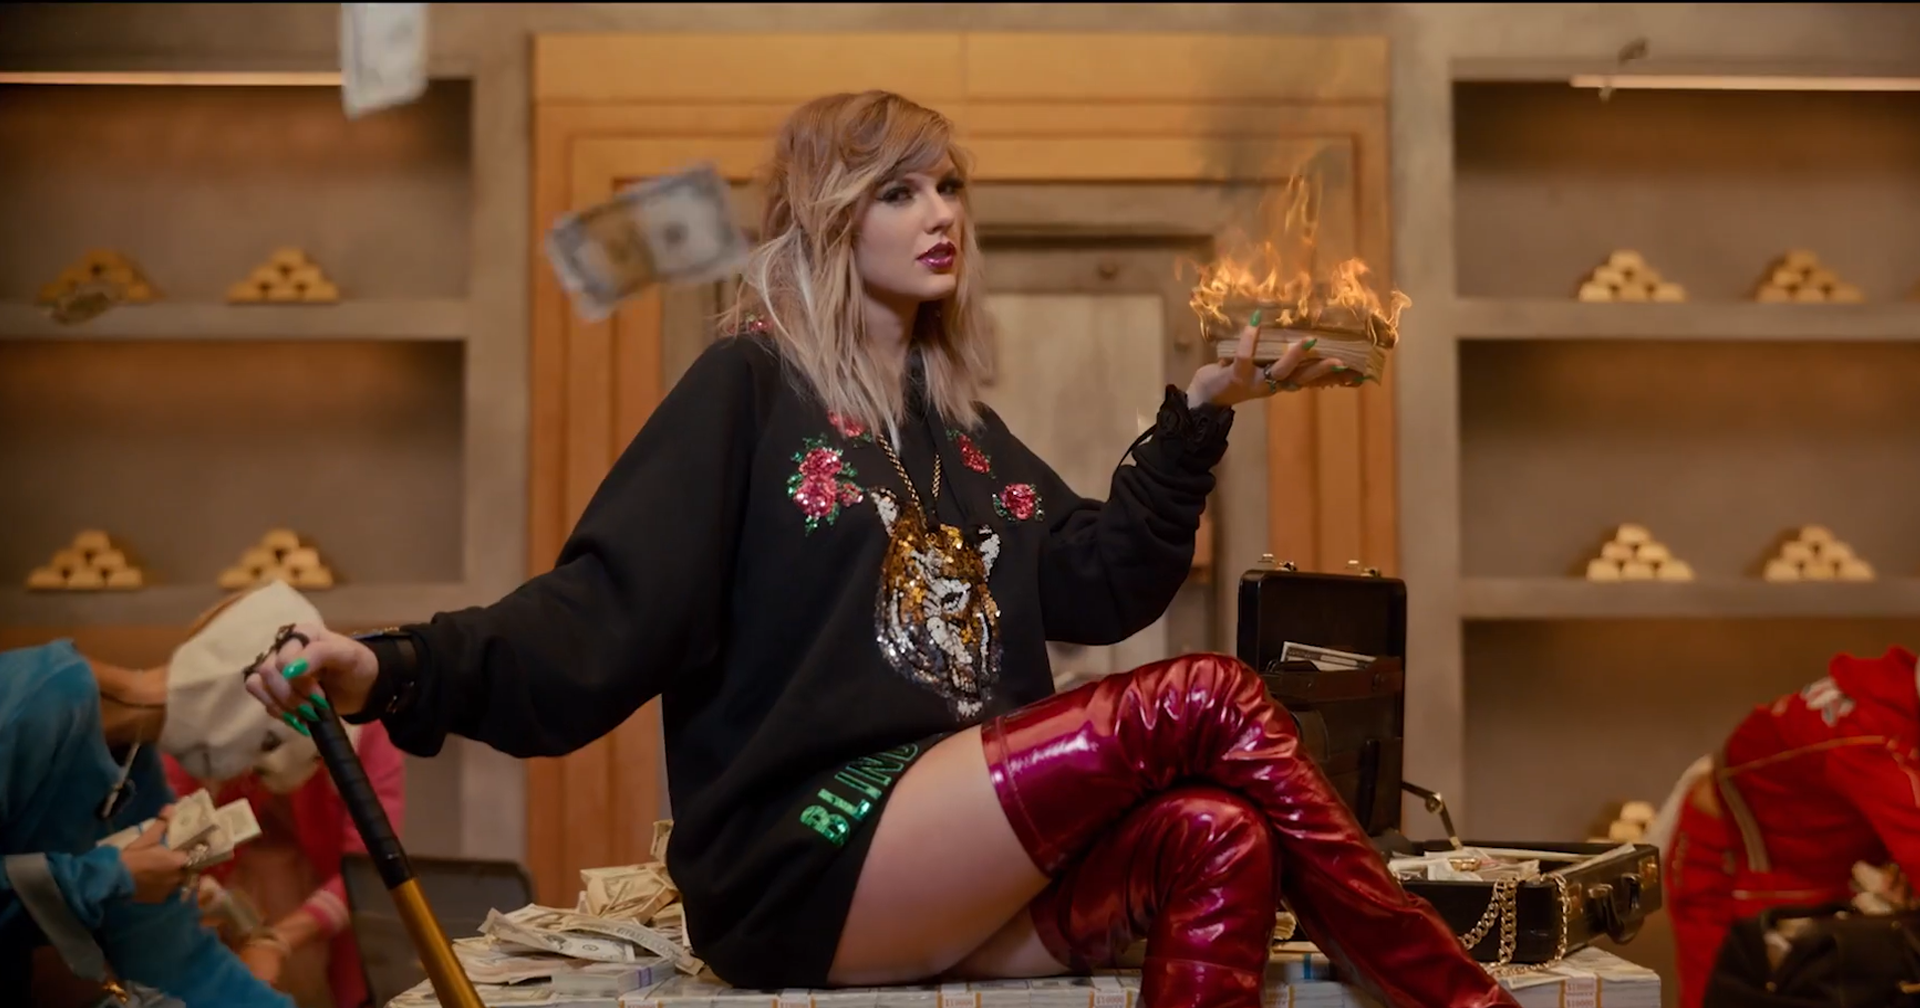 ถอดรหัส MV “Look What You Made Me Do” ของ Taylor Swift กับสัญลักษณ์ที่ซ่อนอยู่